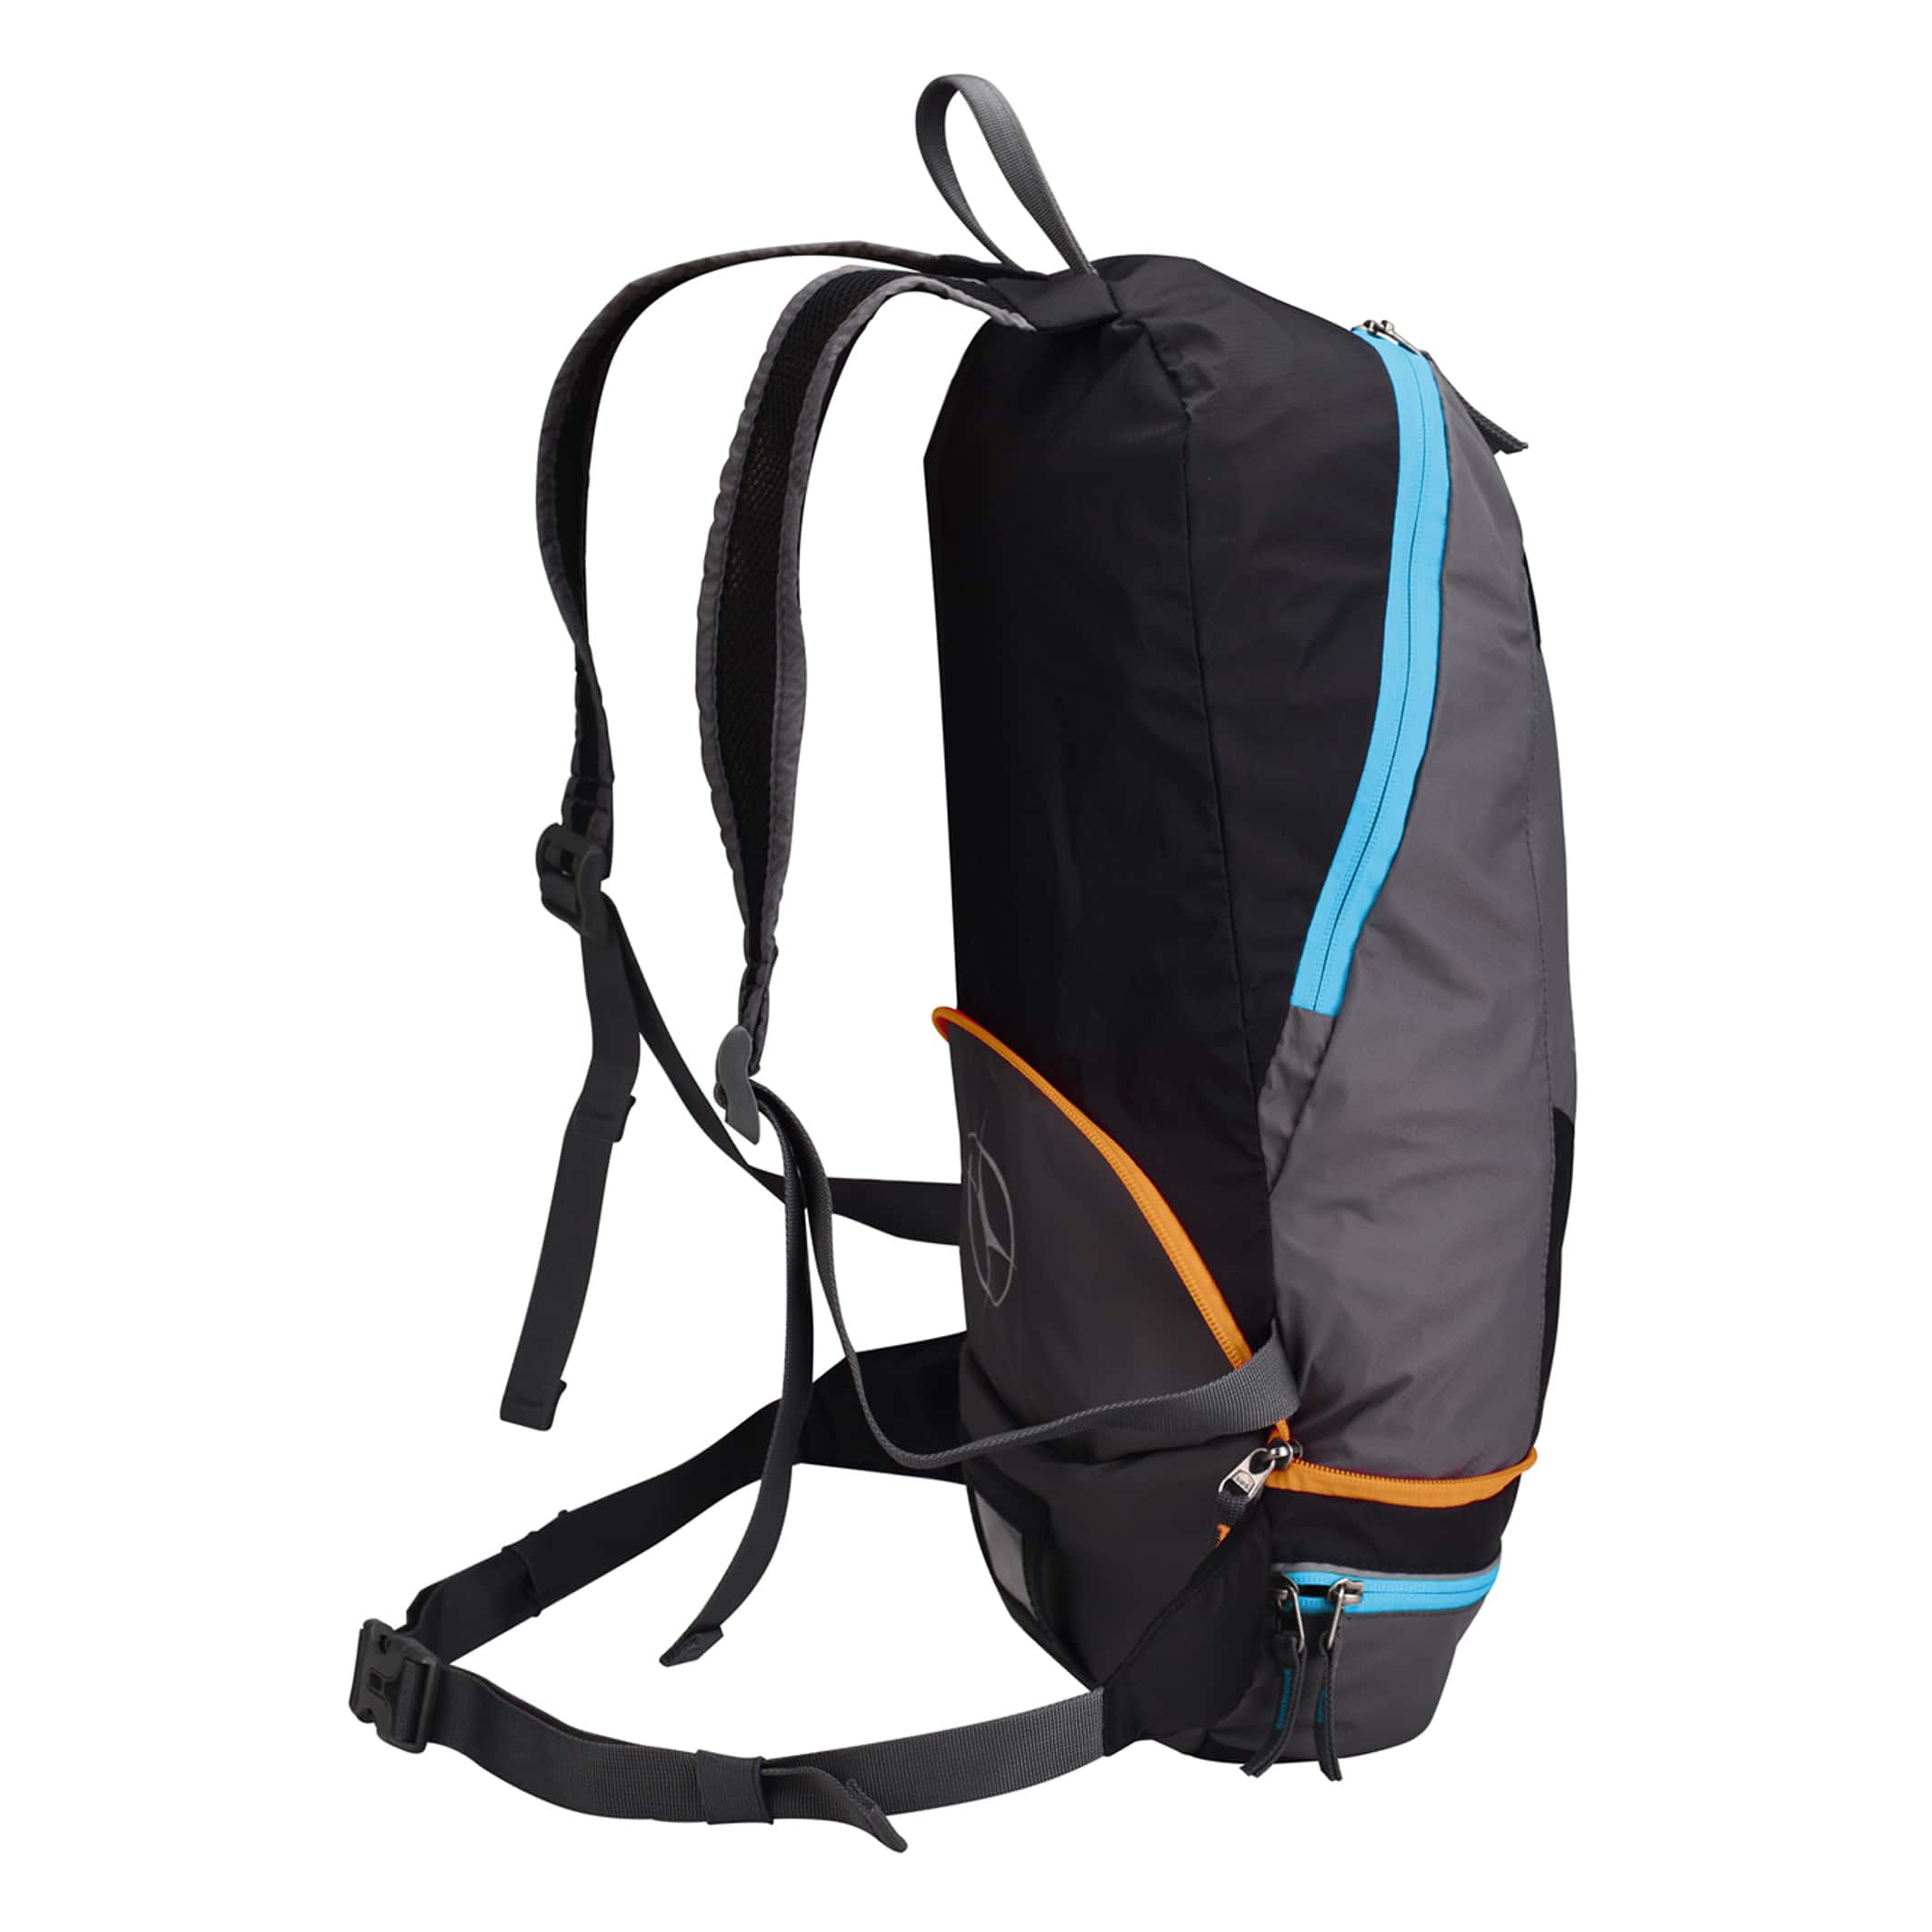 MB550-03-Backpack-2-in-1-Rock-Blue-Orange-Side-Straps